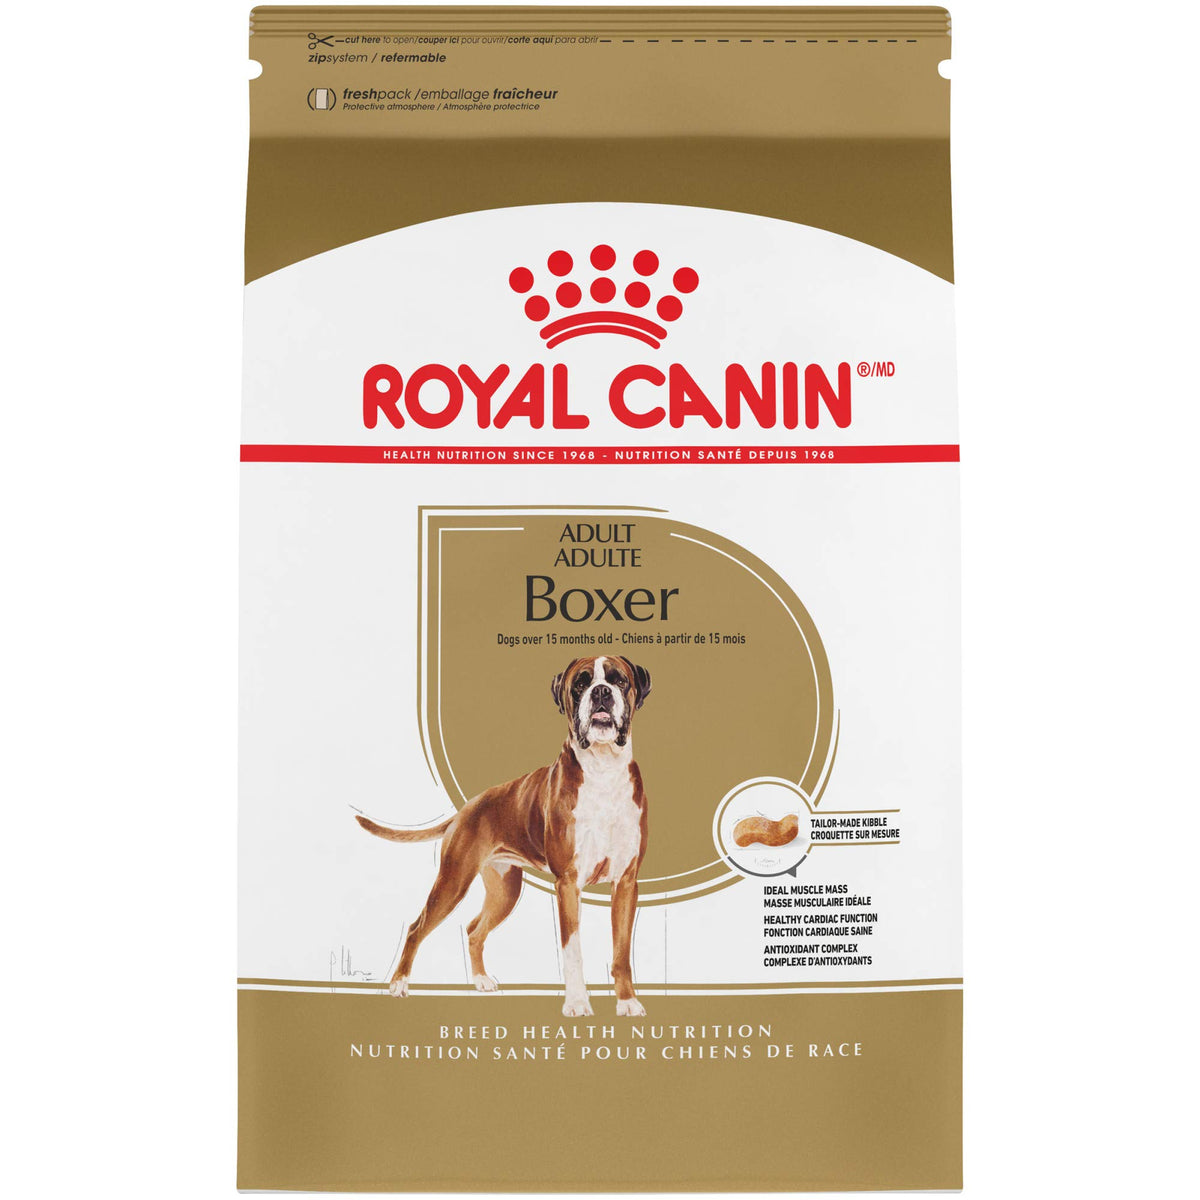 Royal Canin Boxer Adult Dry Dog Food, 17 lb bag